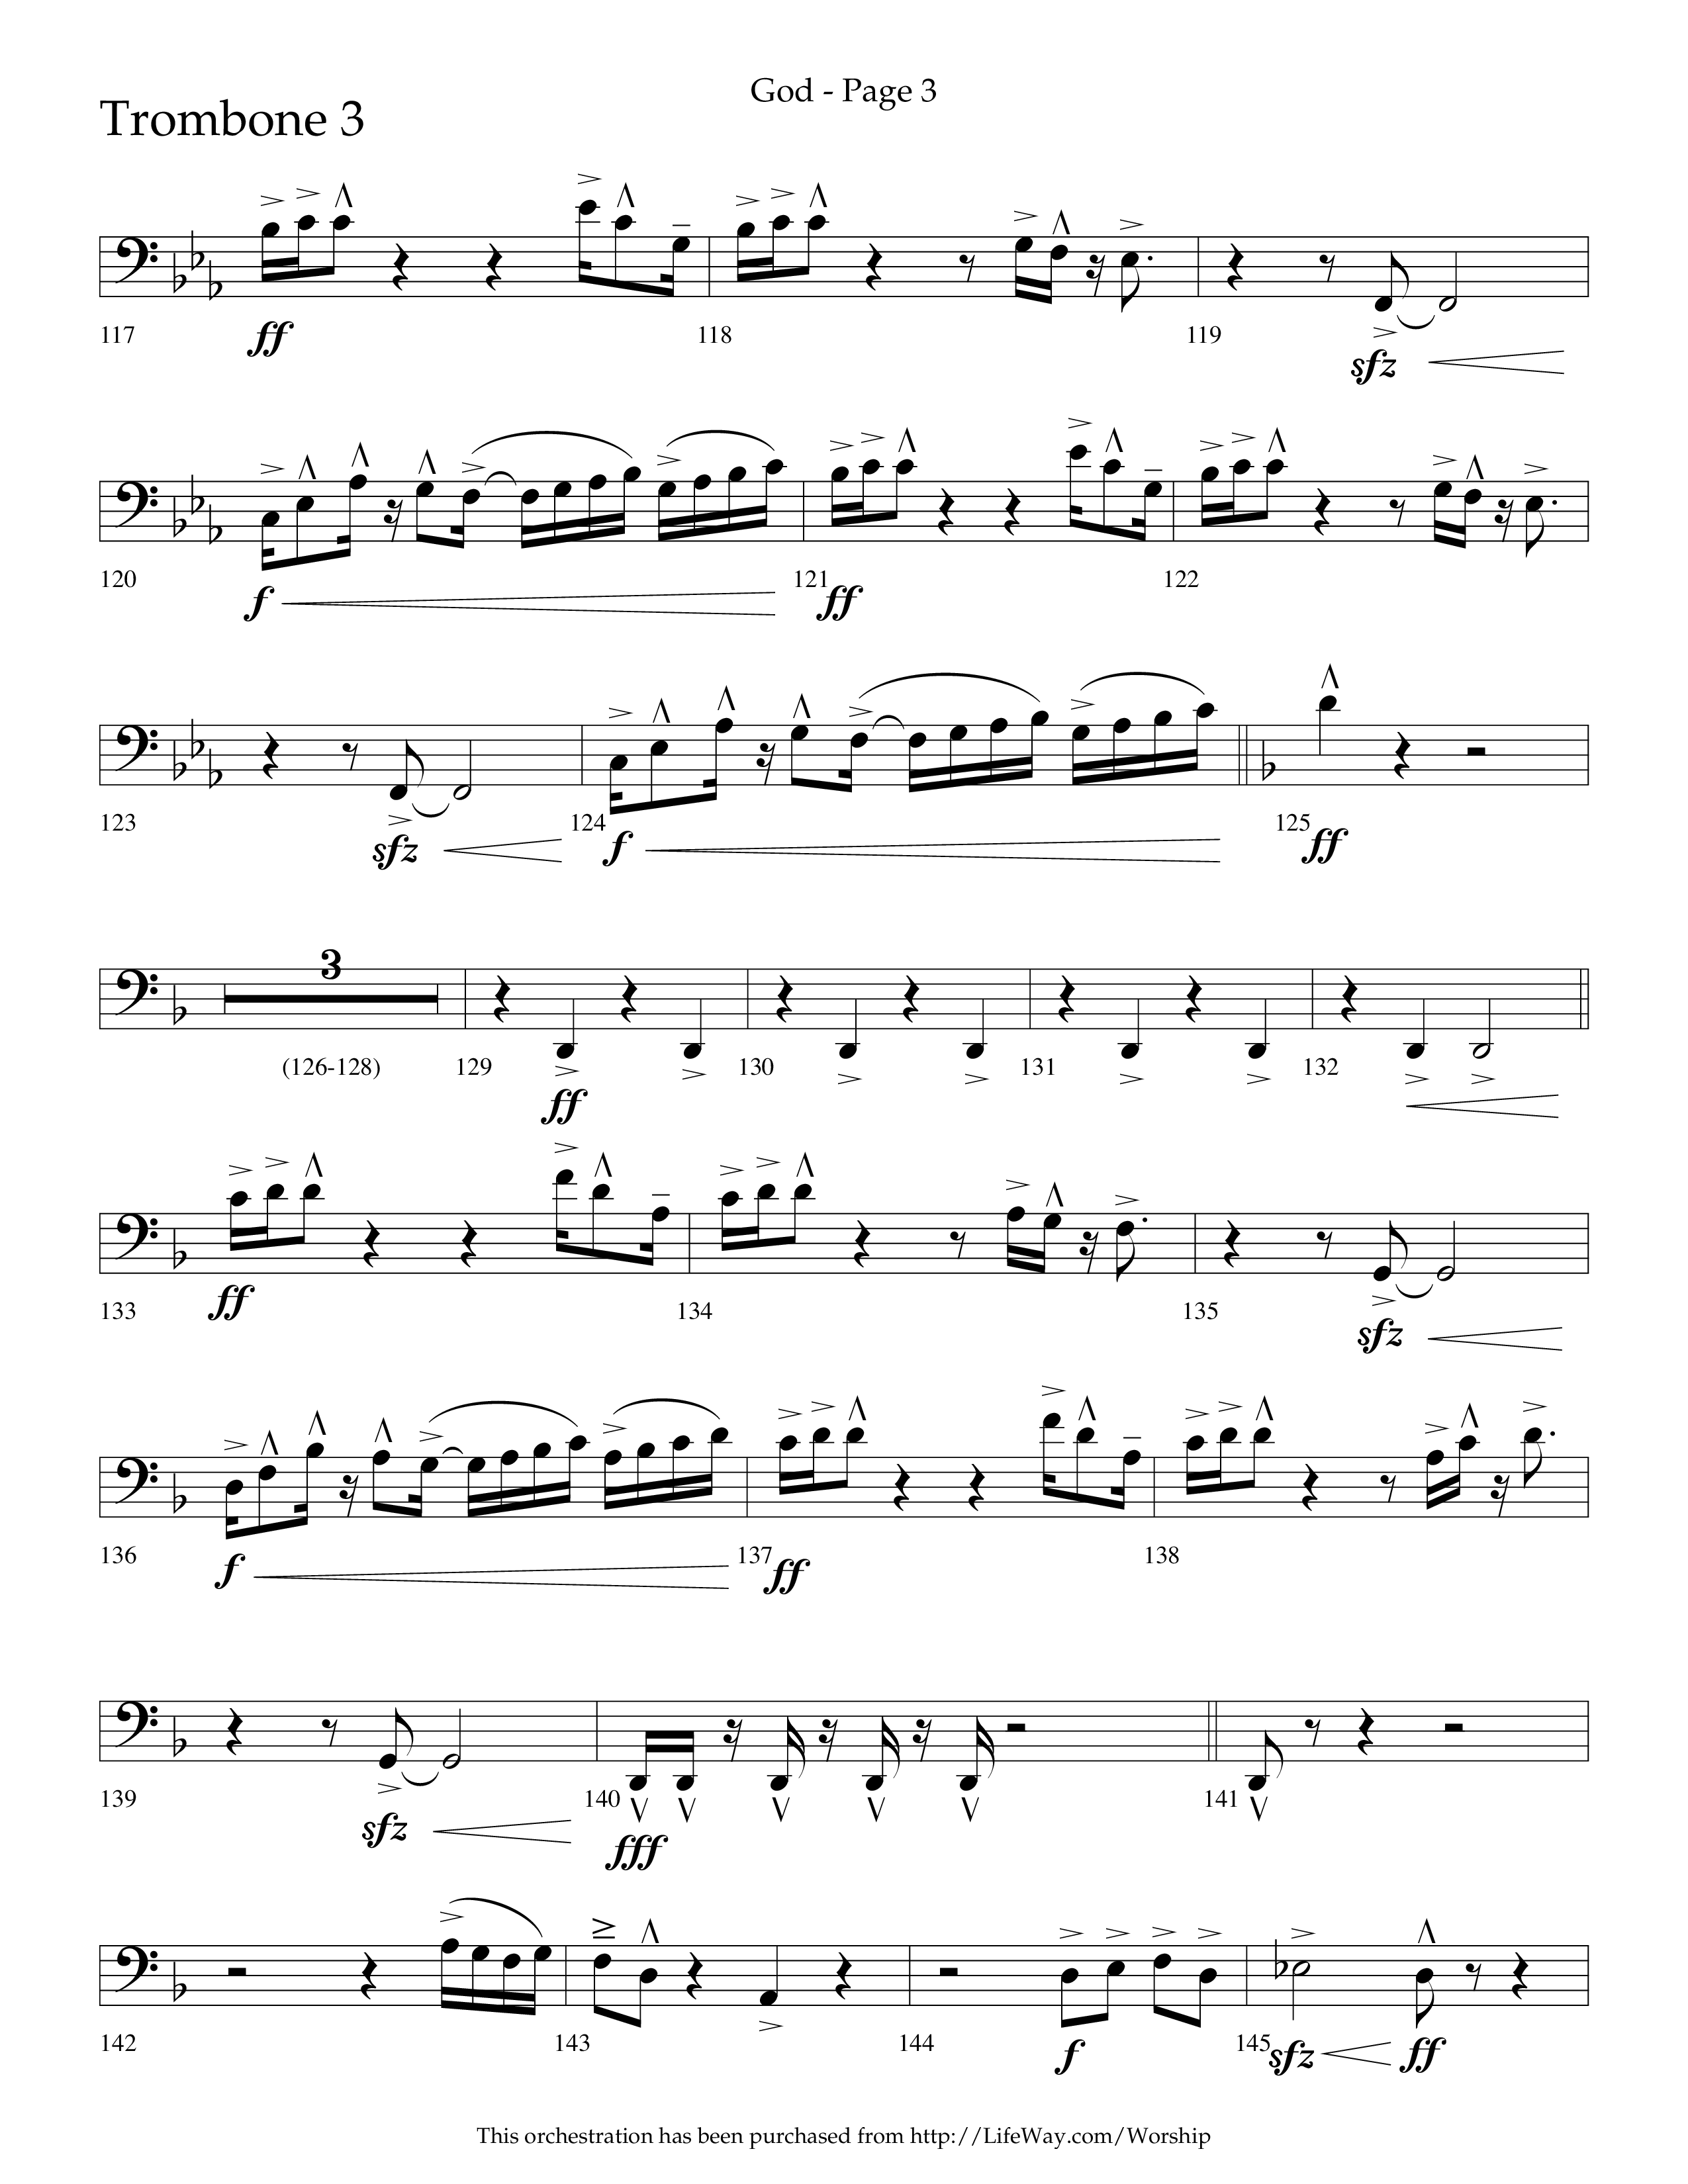 God (Choral Anthem SATB) Trombone 3 (Lifeway Choral / Arr. Cliff Duren)